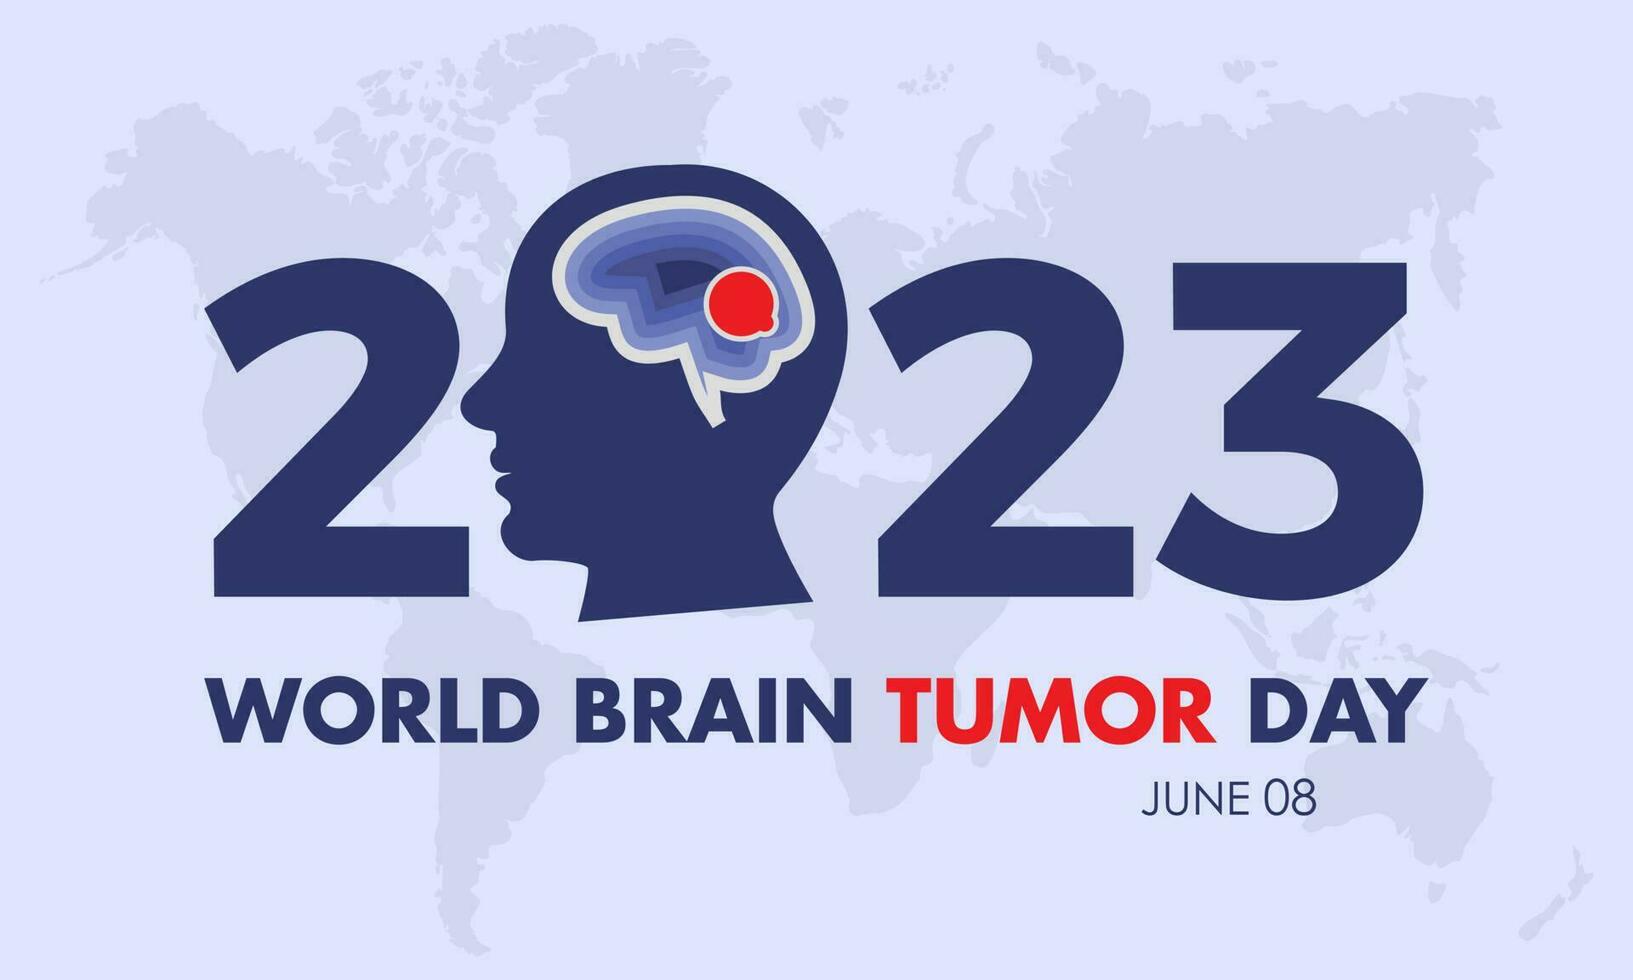 2023 Concept World Brain Tumor Day vector illustration awareness banner template